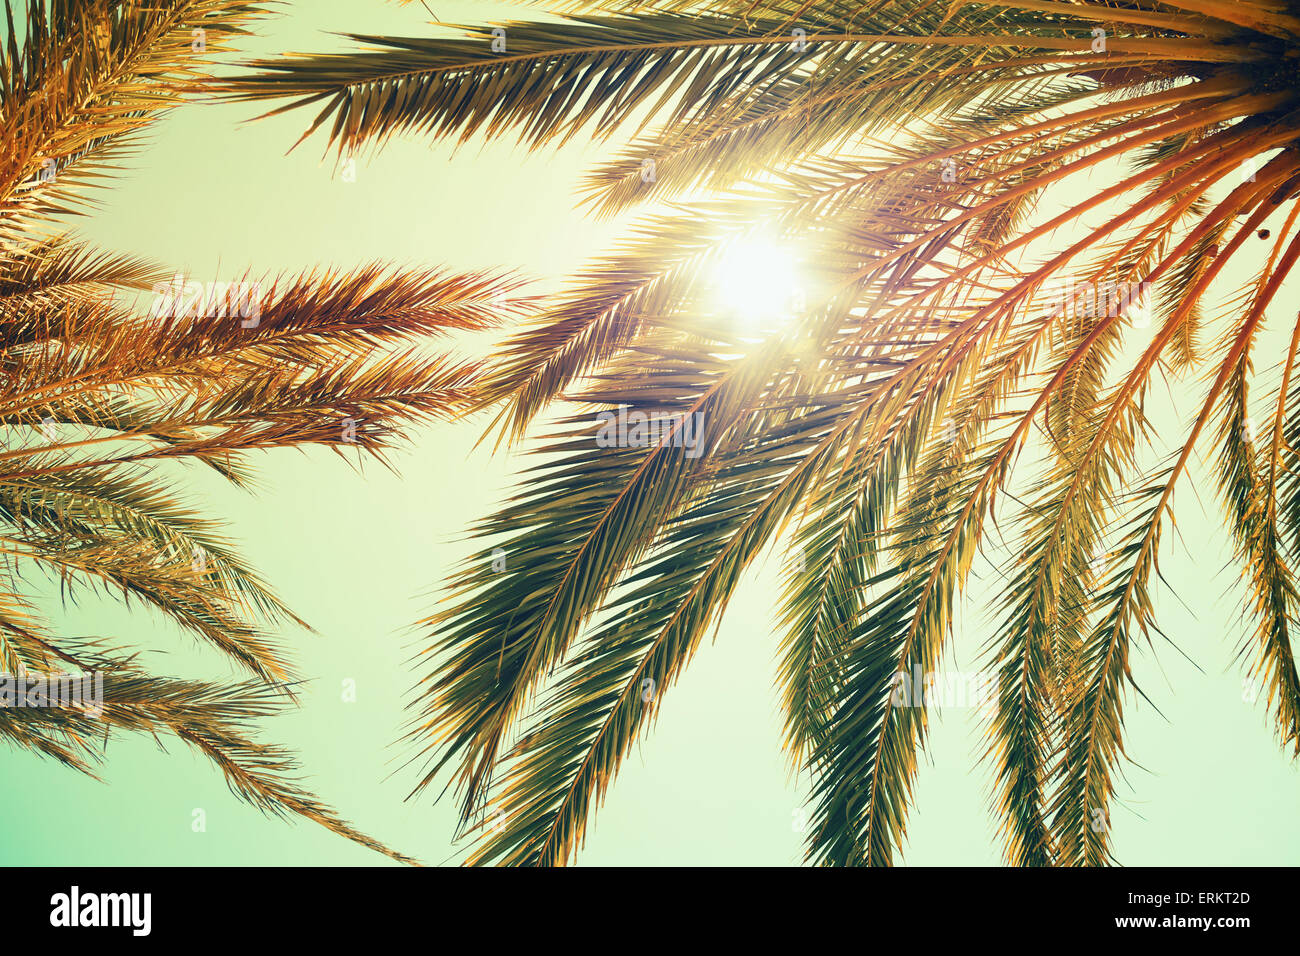 Palmiers et soleil brillant sur fond de ciel lumineux. Vintage style. Photo aux tons colorés vintage avec effet filtre tonal, ins Banque D'Images